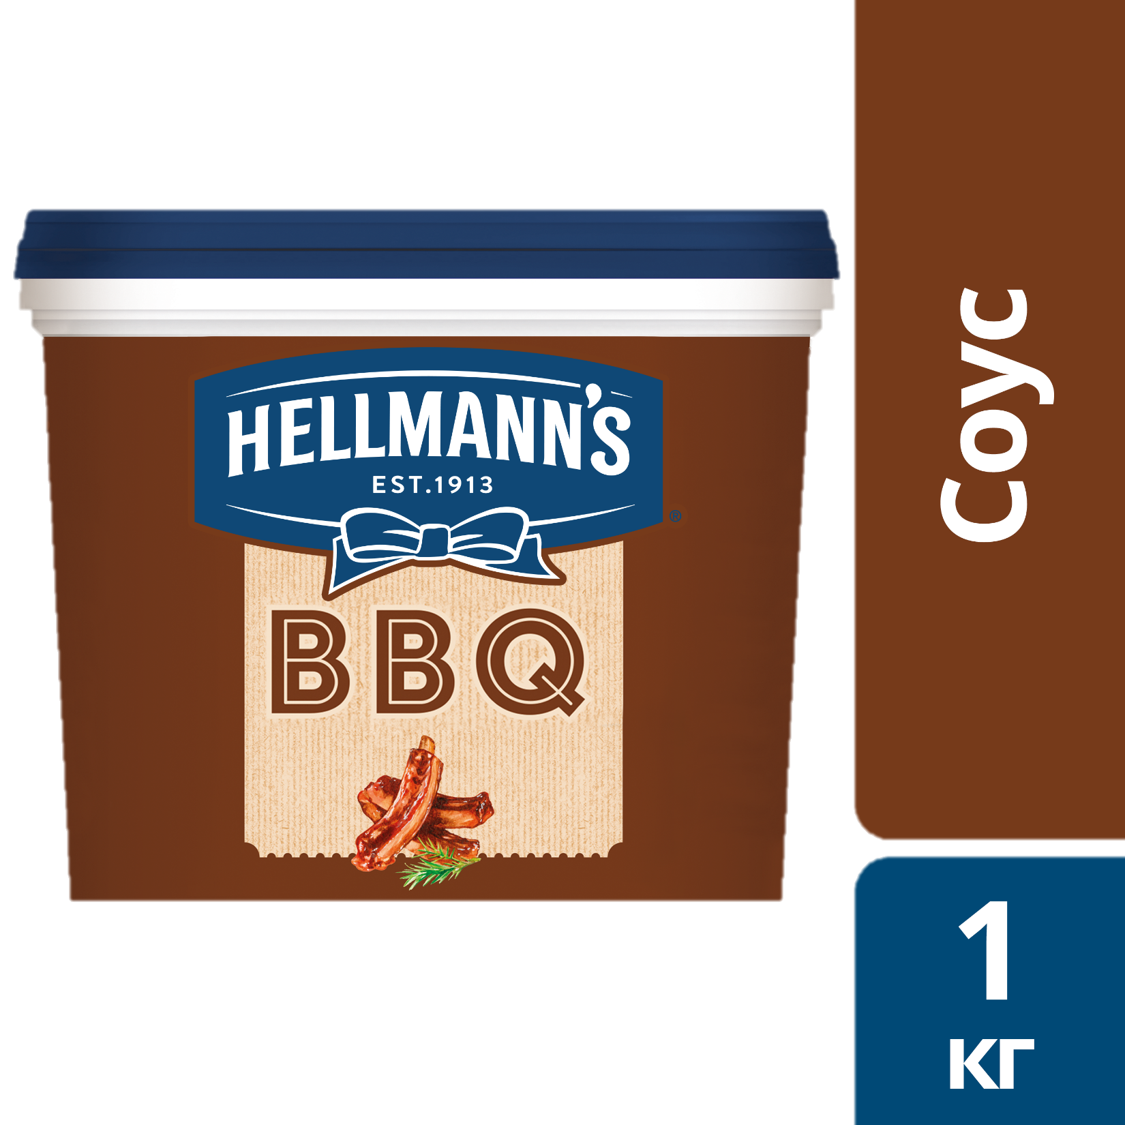 HELLMANN'S Соус Барбекю (1кг) - Unilever Food Solution. Новая линейка соусов Hellmann's